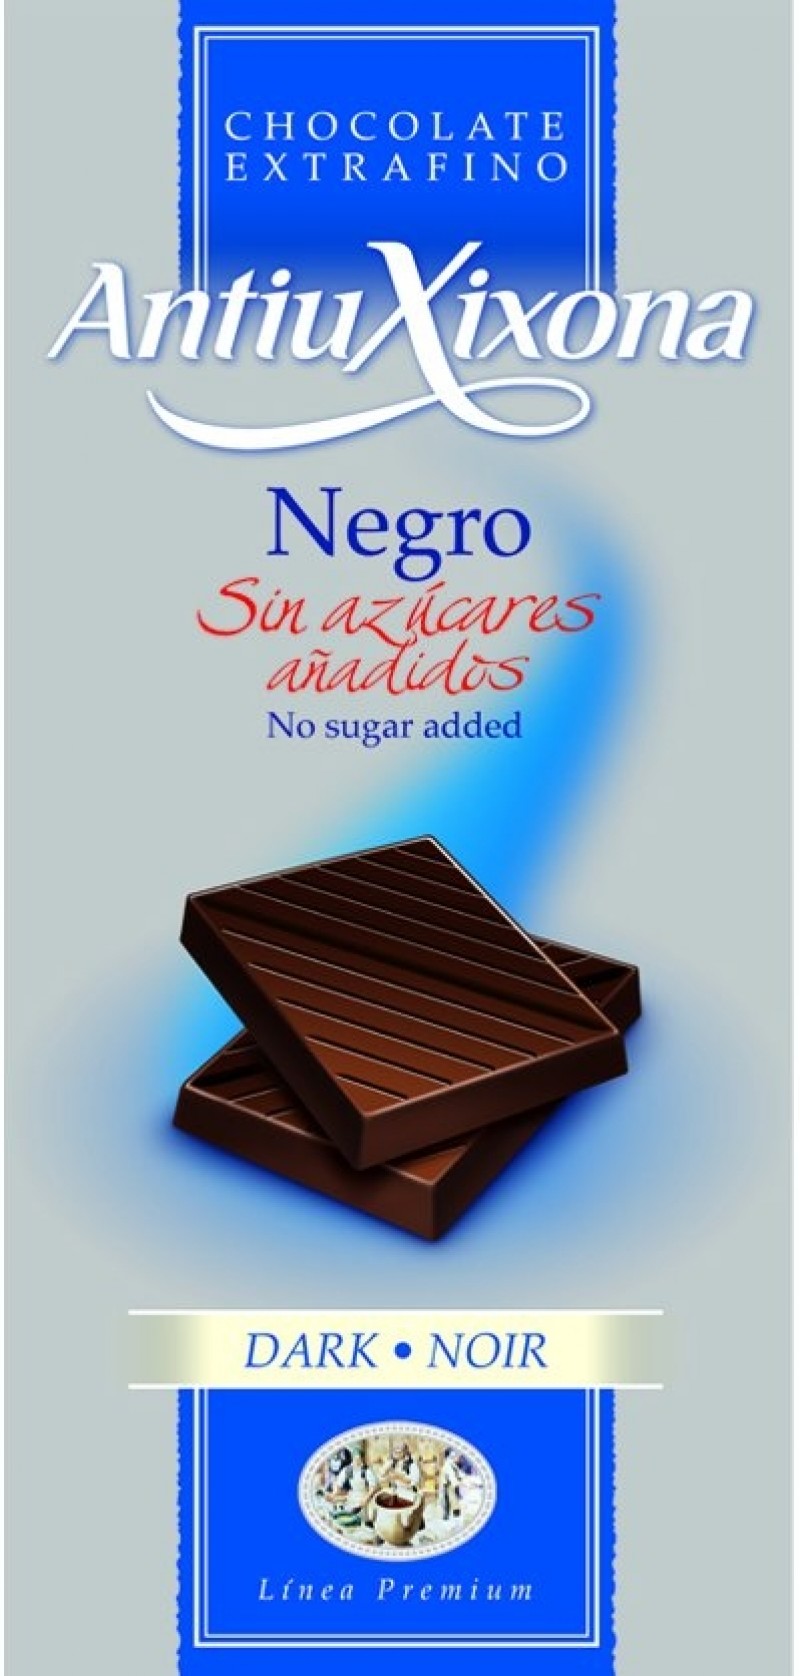 chocolate negro sin azúcares añadidos Antiu Xixona